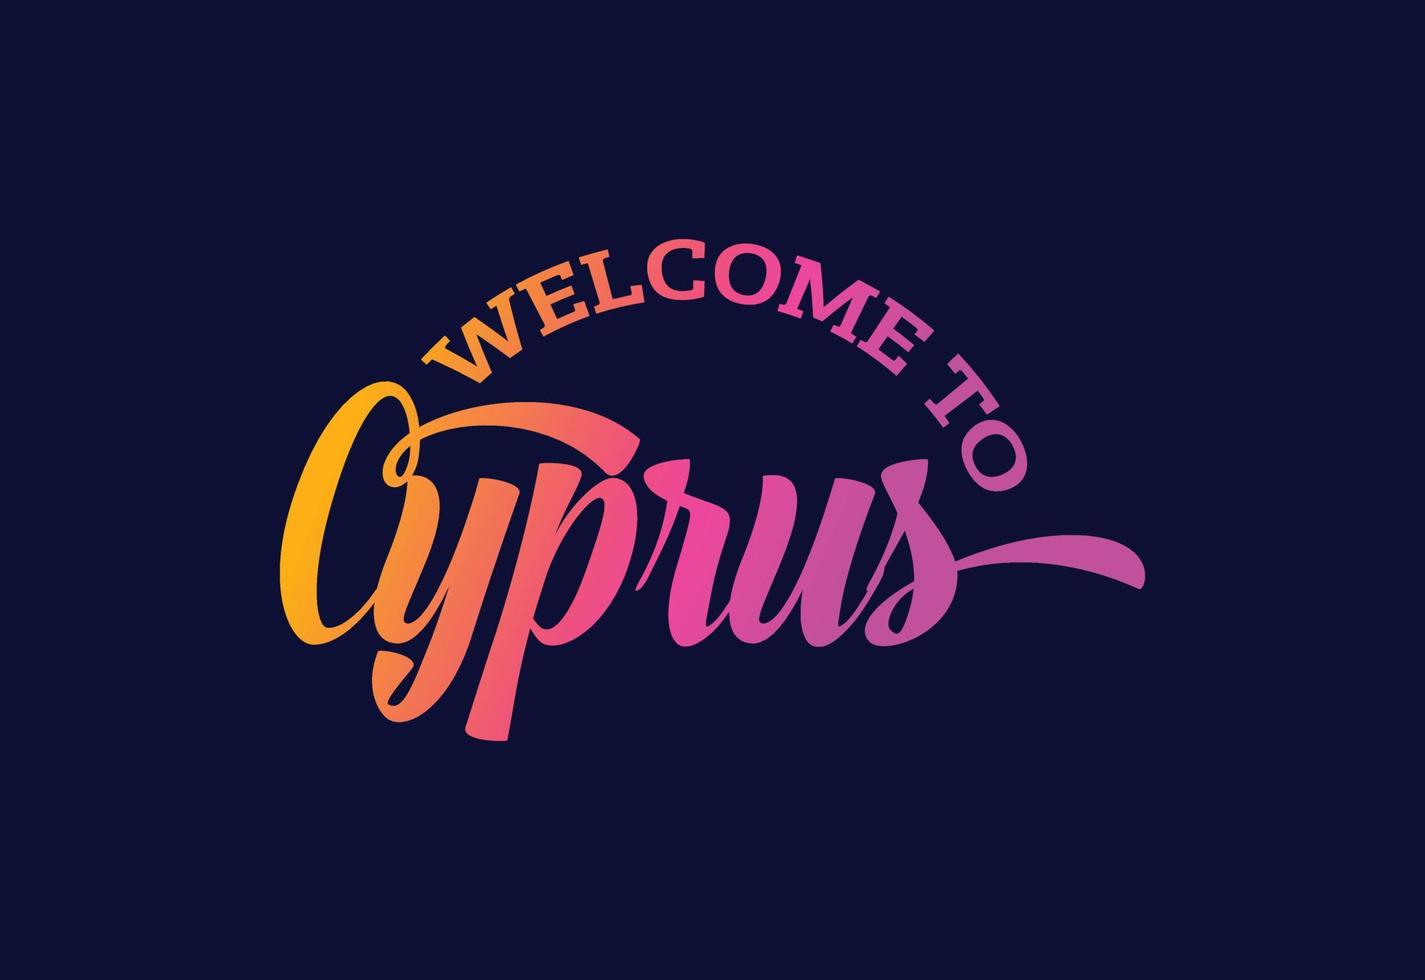 benvenuto a cipro parola testo creativo font design illustrazione. segno di benvenuto vettore